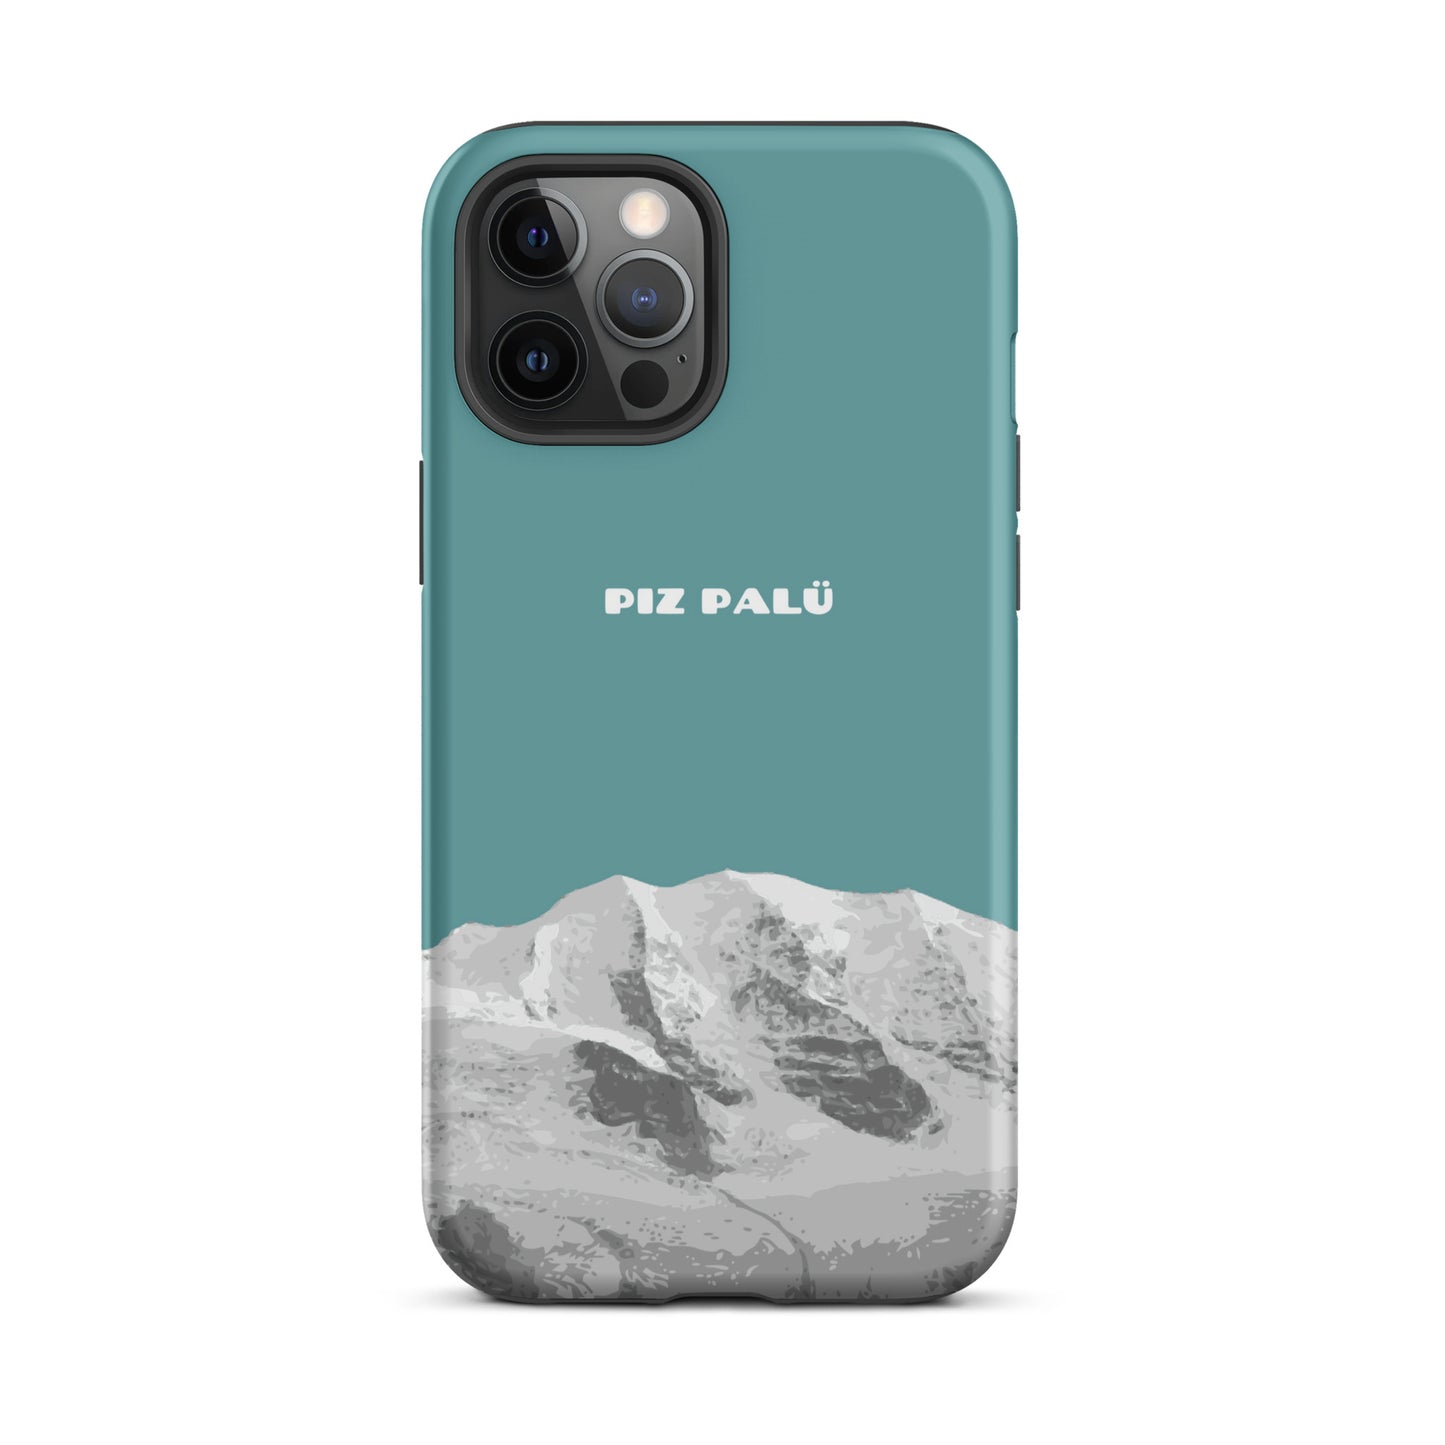 Hülle für das iPhone 12 Pro Max von Apple in der Farbe Kadettenblau, dass den Piz Palü in Graubünden zeigt.